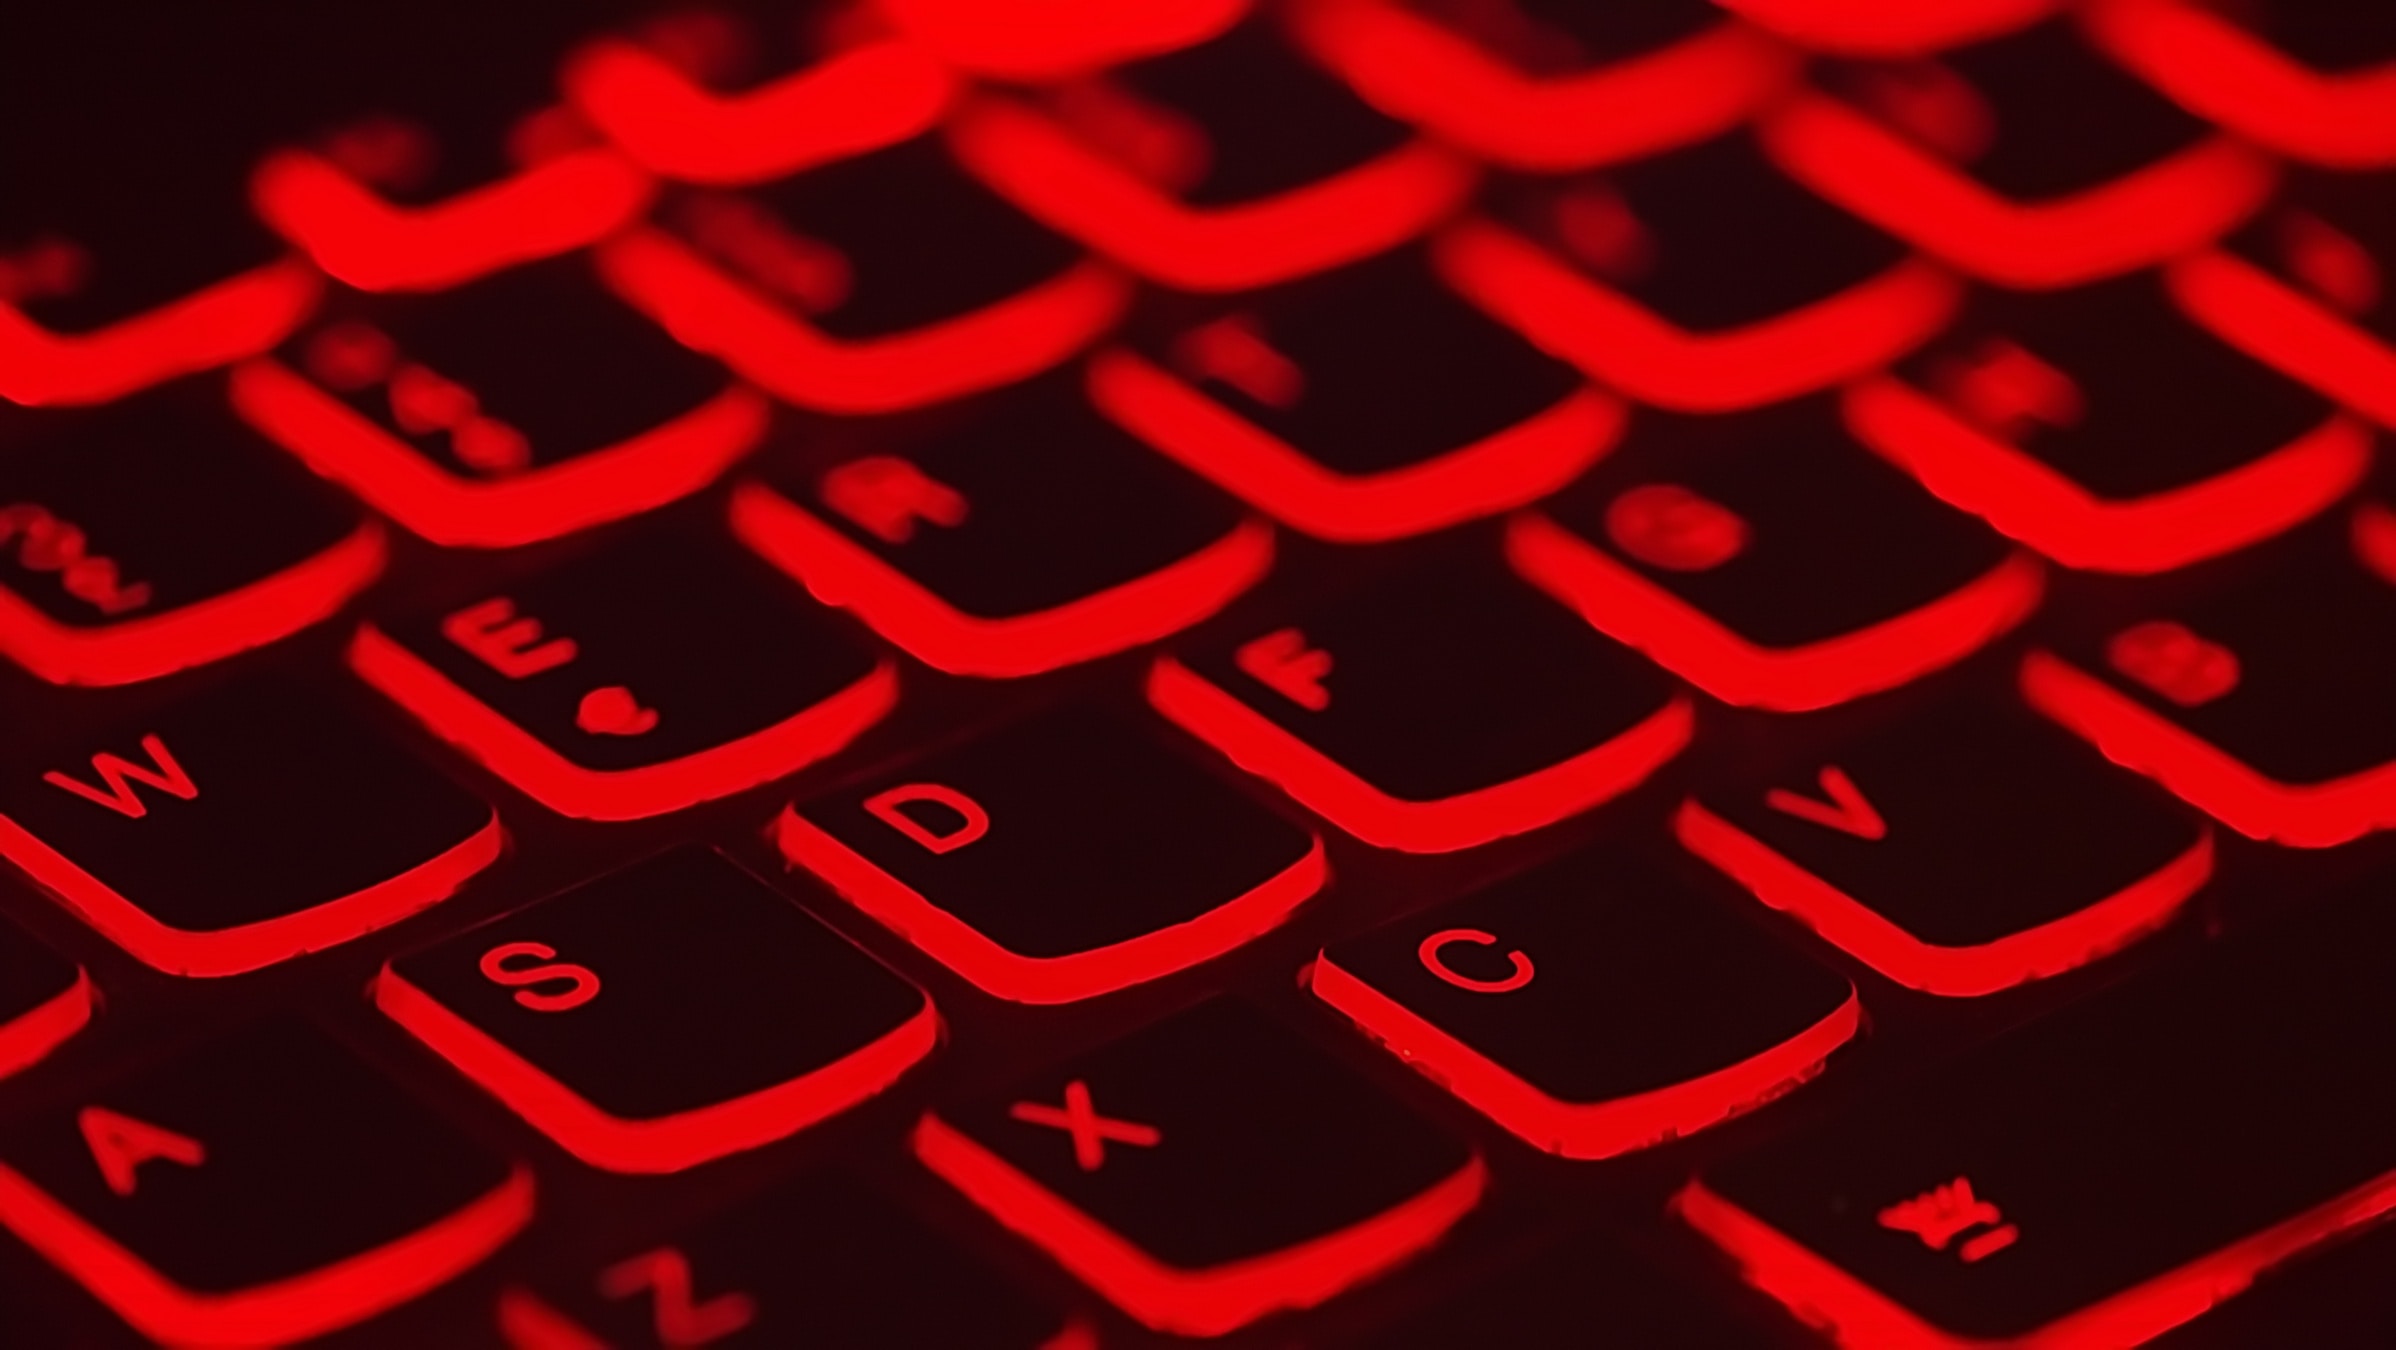 Keyboard keys lit in red